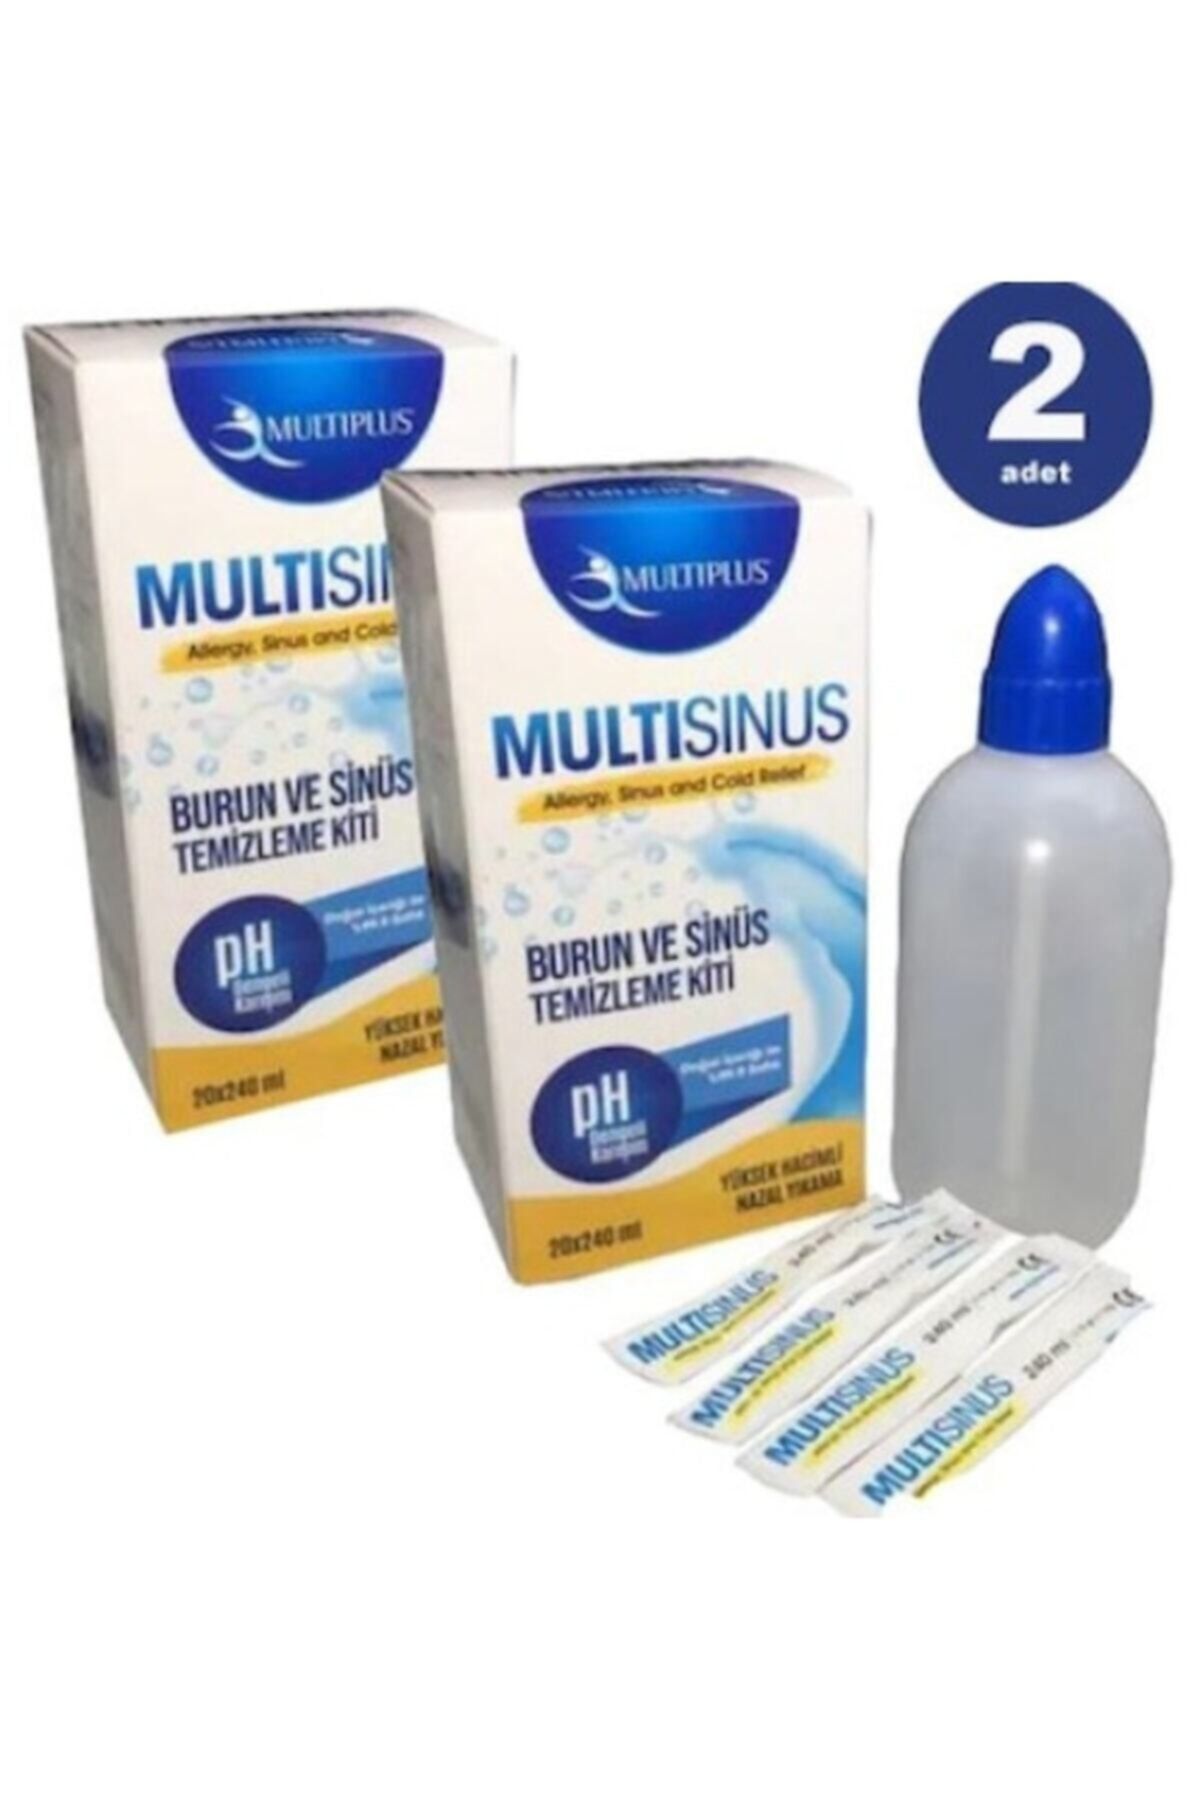 Multiplus Multi Sinüs Rinse Burun Ve Sinüs Temizleme Kiti X 2 Adet